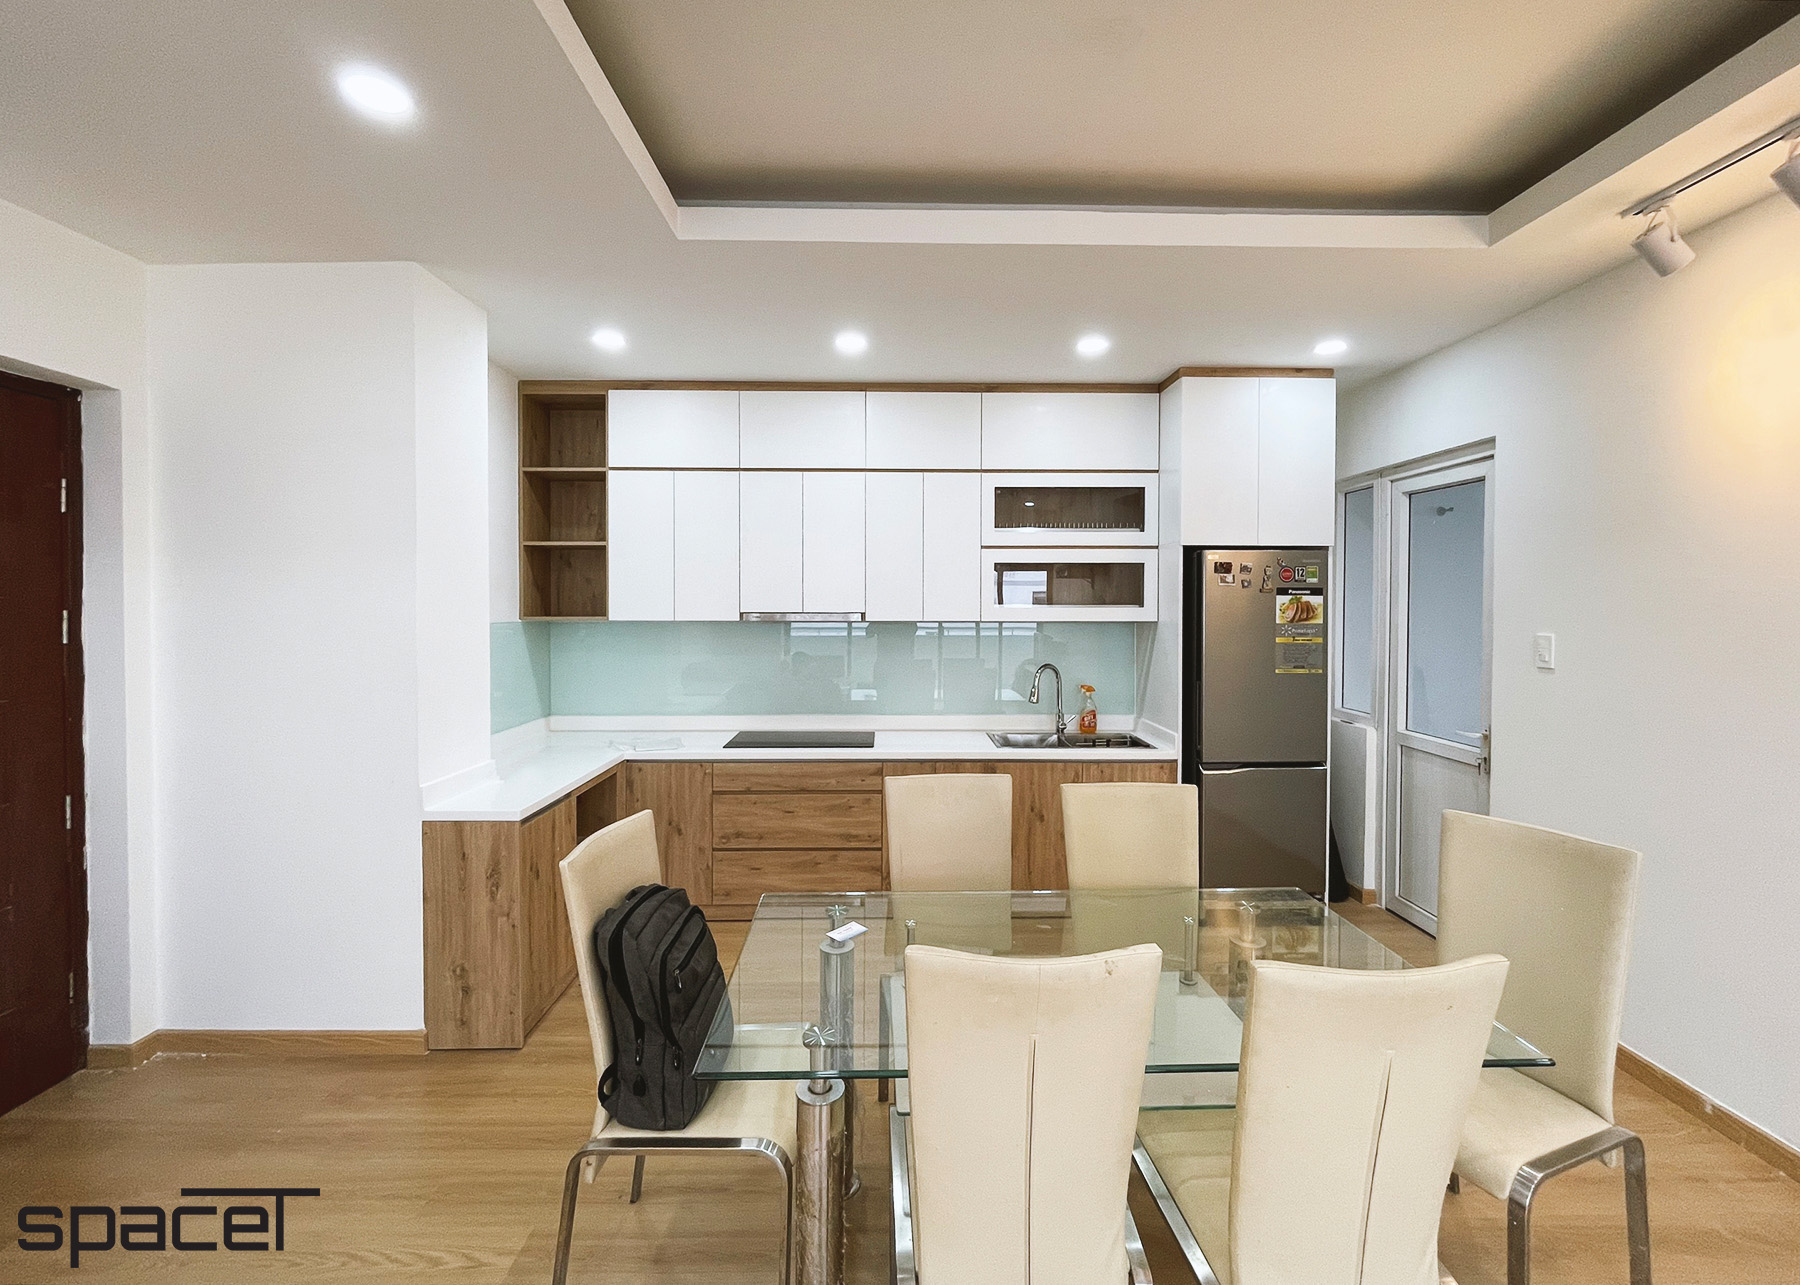 Phòng ăn, phòng bếp, phong cách Hiện đại Modern, hoàn thiện nội thất, căn hộ chung cư Minh Thành